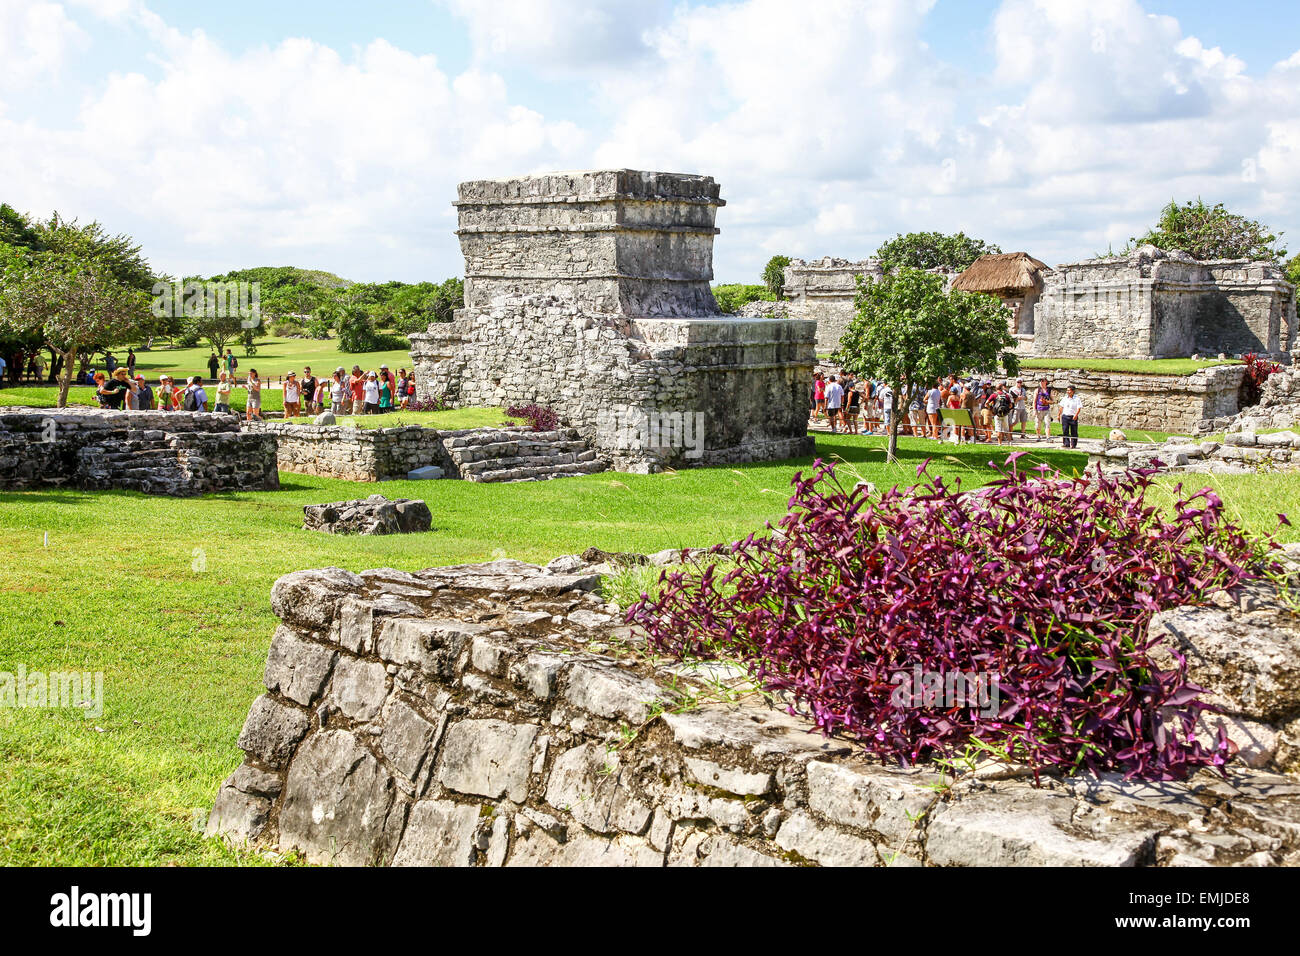 Les ruines de Tulum, le site d'un vieux Maya Maya précolombien archéologie civilisation ancienne ville fortifiée sur la péninsule du Yucatán, Q Banque D'Images